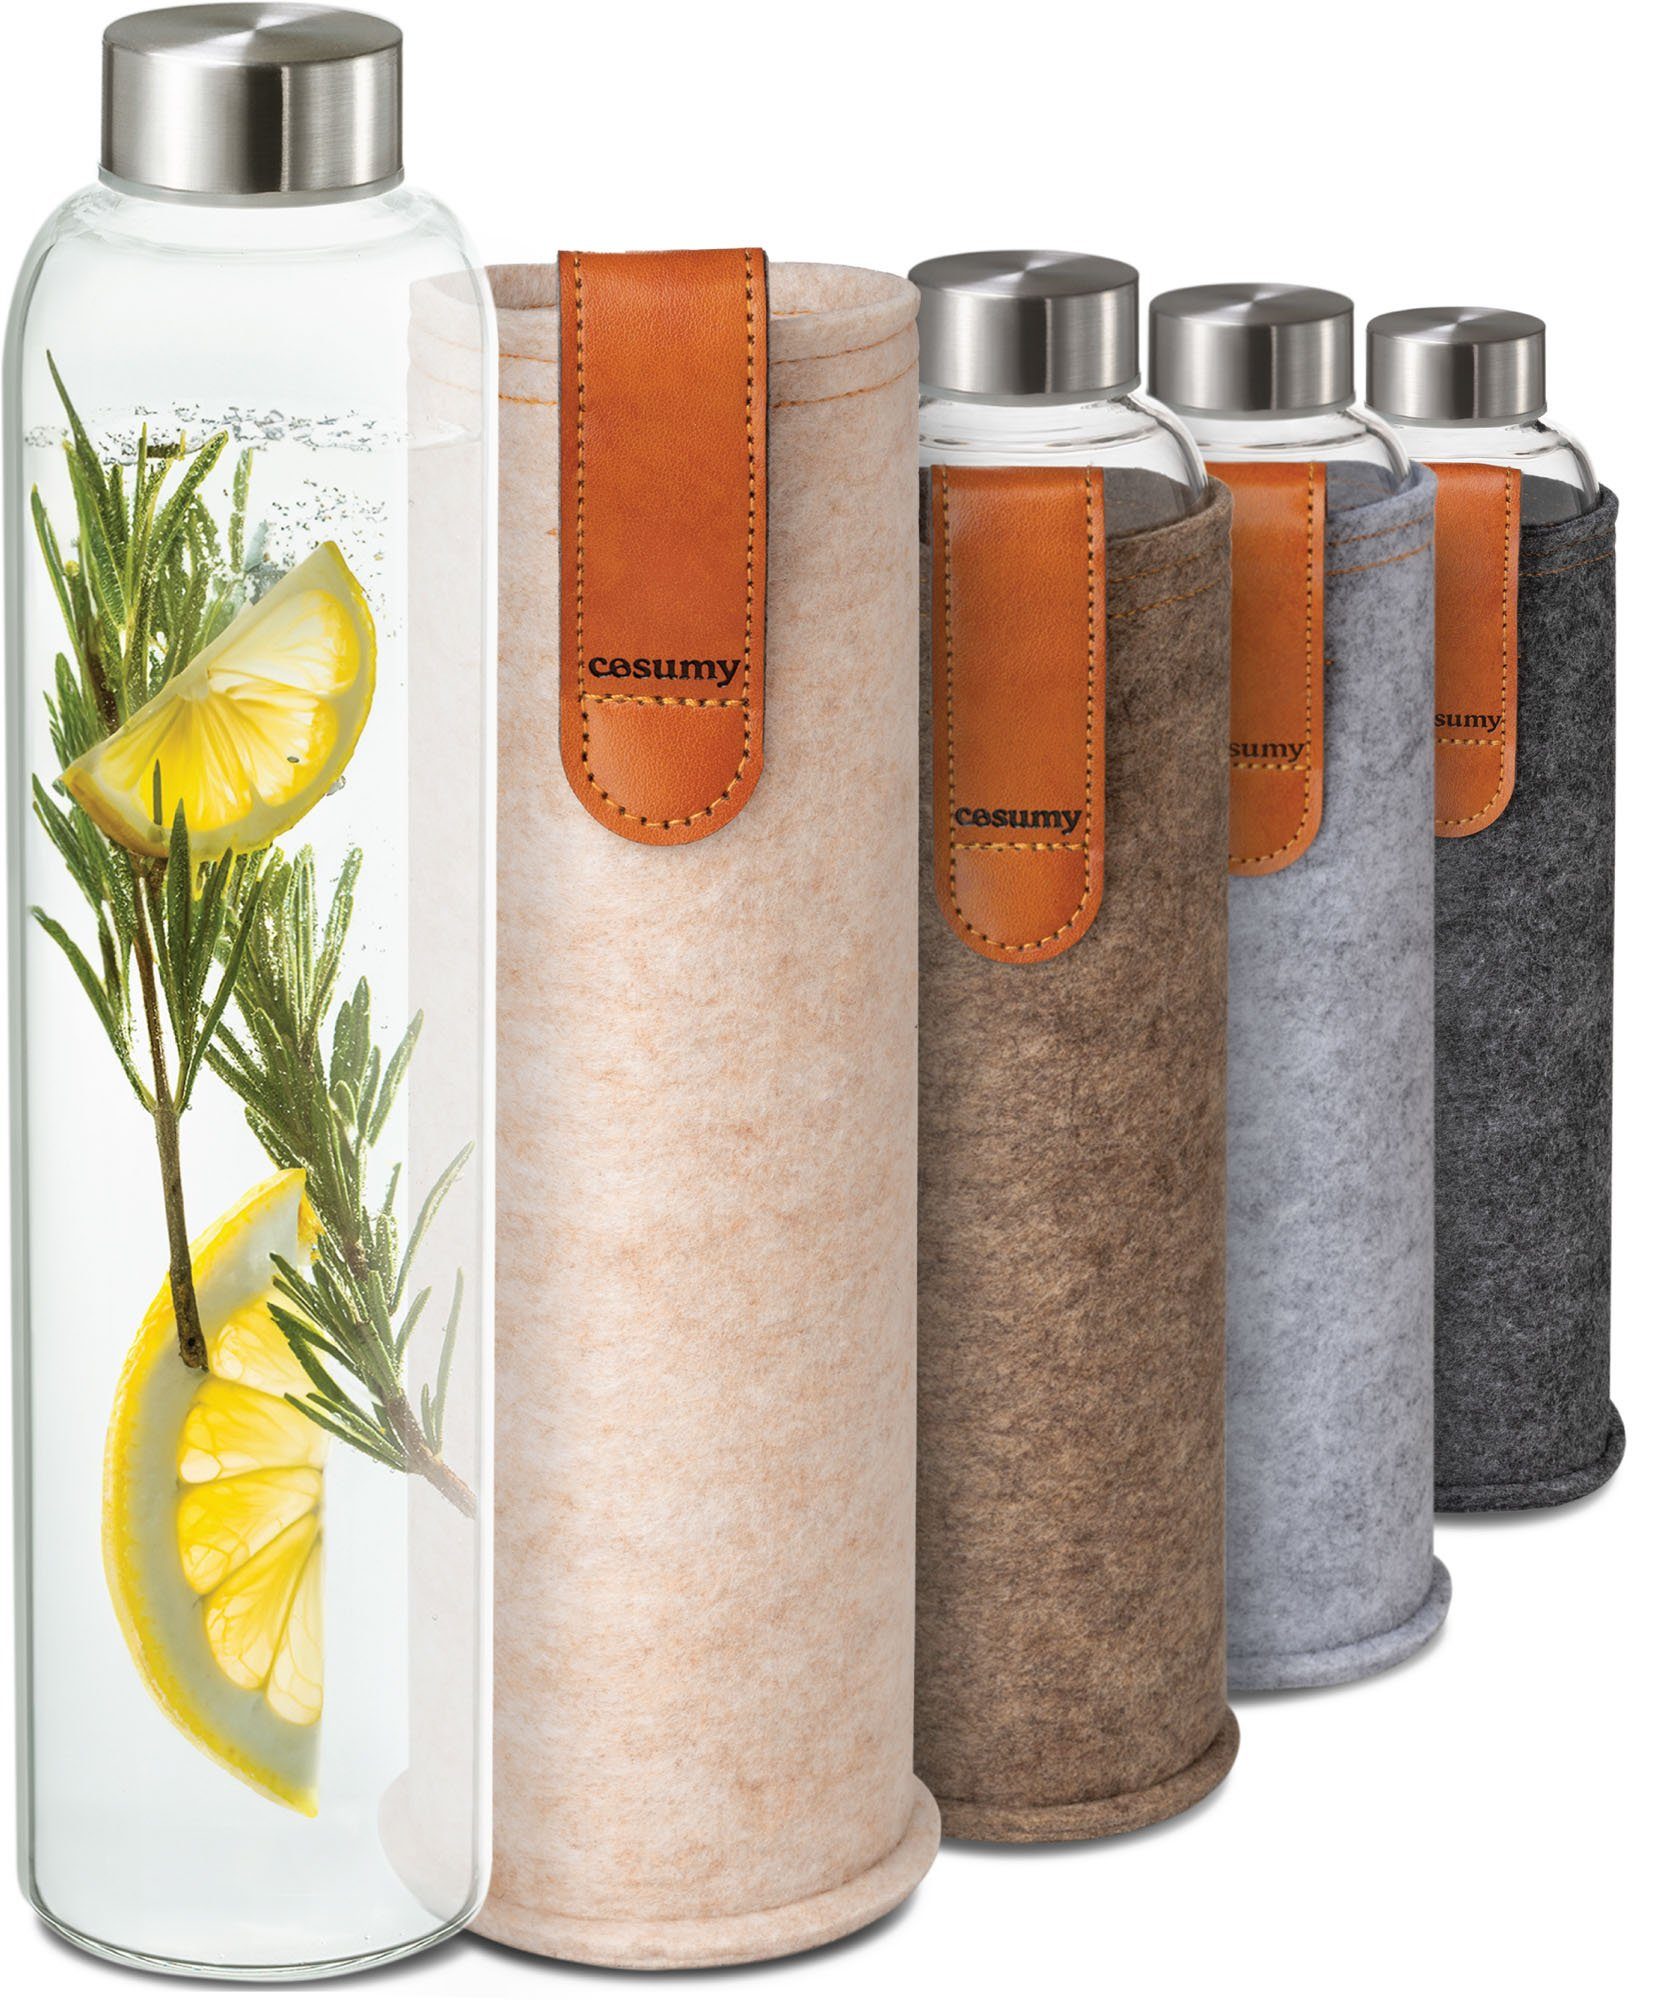 Cosumy Trinkflasche 750ml mit Filzhülle - Robustes Borosilikatglas - Auslaufsicher, Anthrazit - BPA-freie Wasserflasche - für Kohlensäure geeignet Beige